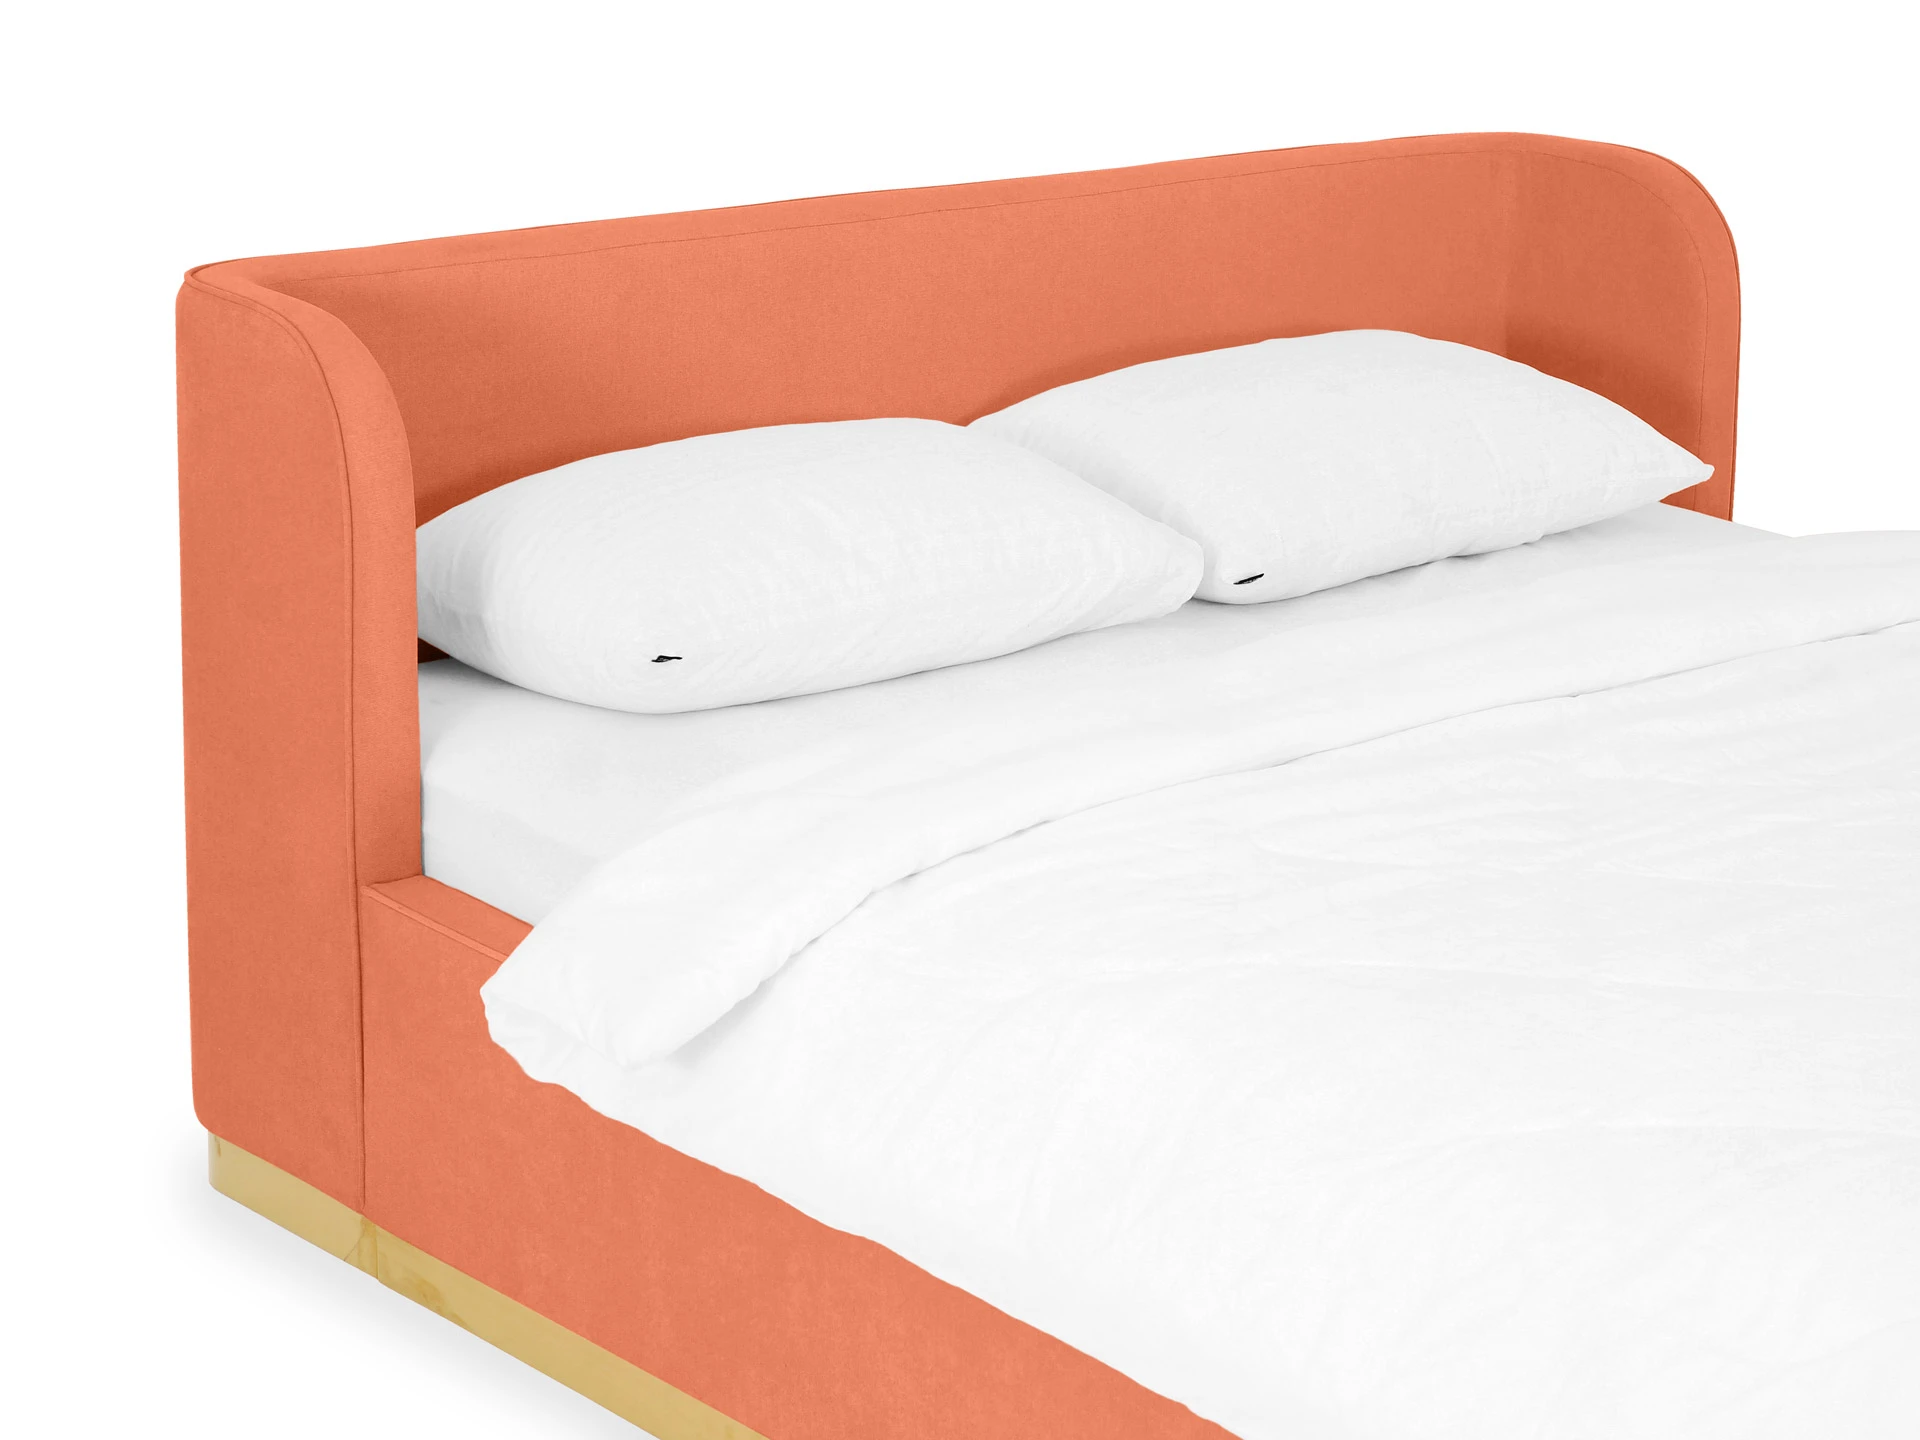 Кровать 160х200 с подъемным механизмом Vibe оранжевый 748479